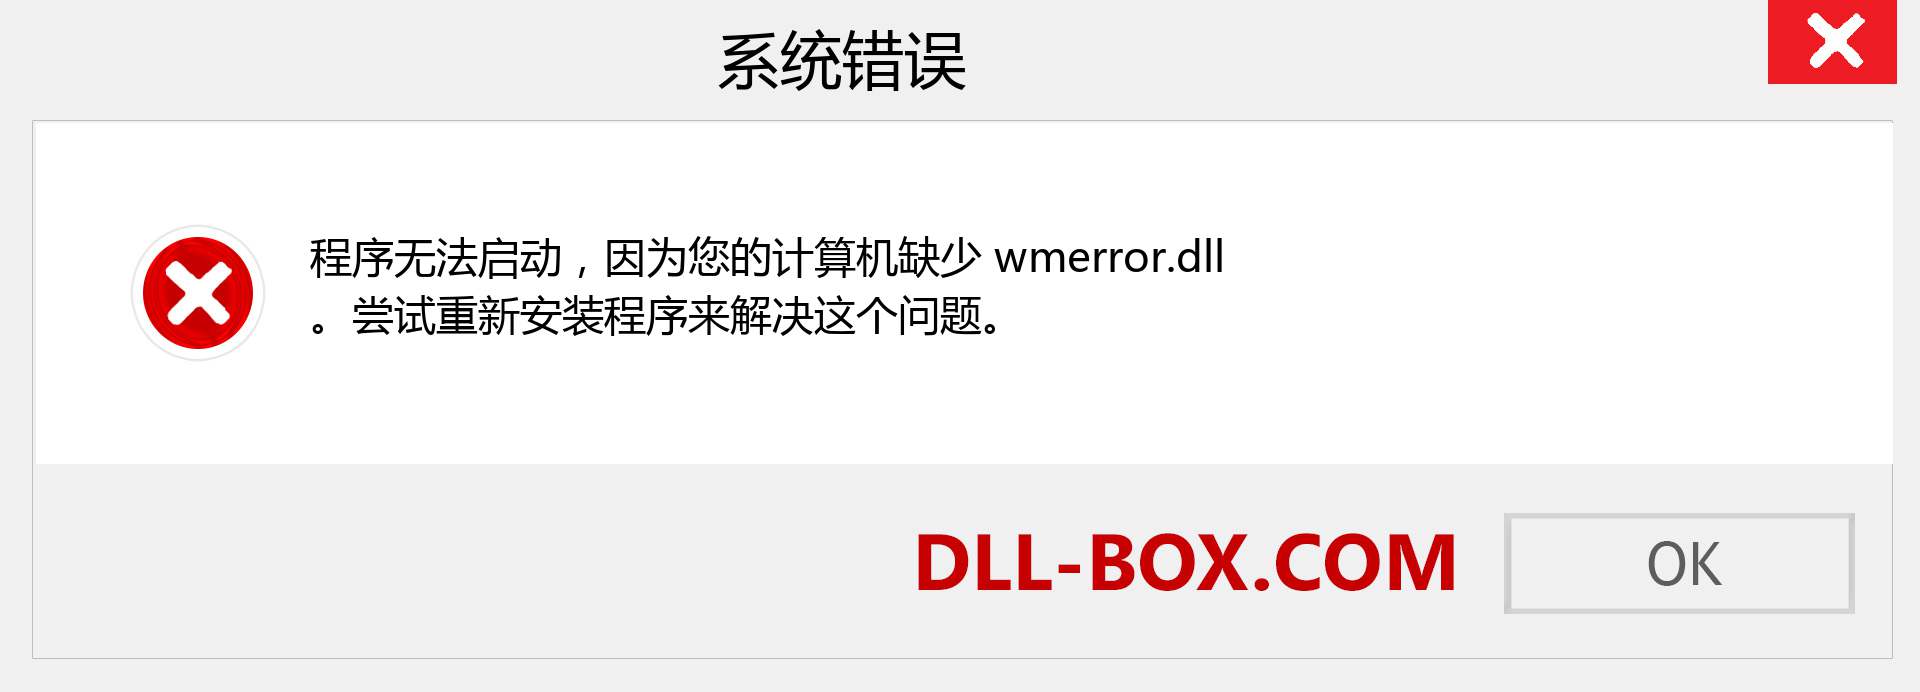 wmerror.dll 文件丢失？。 适用于 Windows 7、8、10 的下载 - 修复 Windows、照片、图像上的 wmerror dll 丢失错误